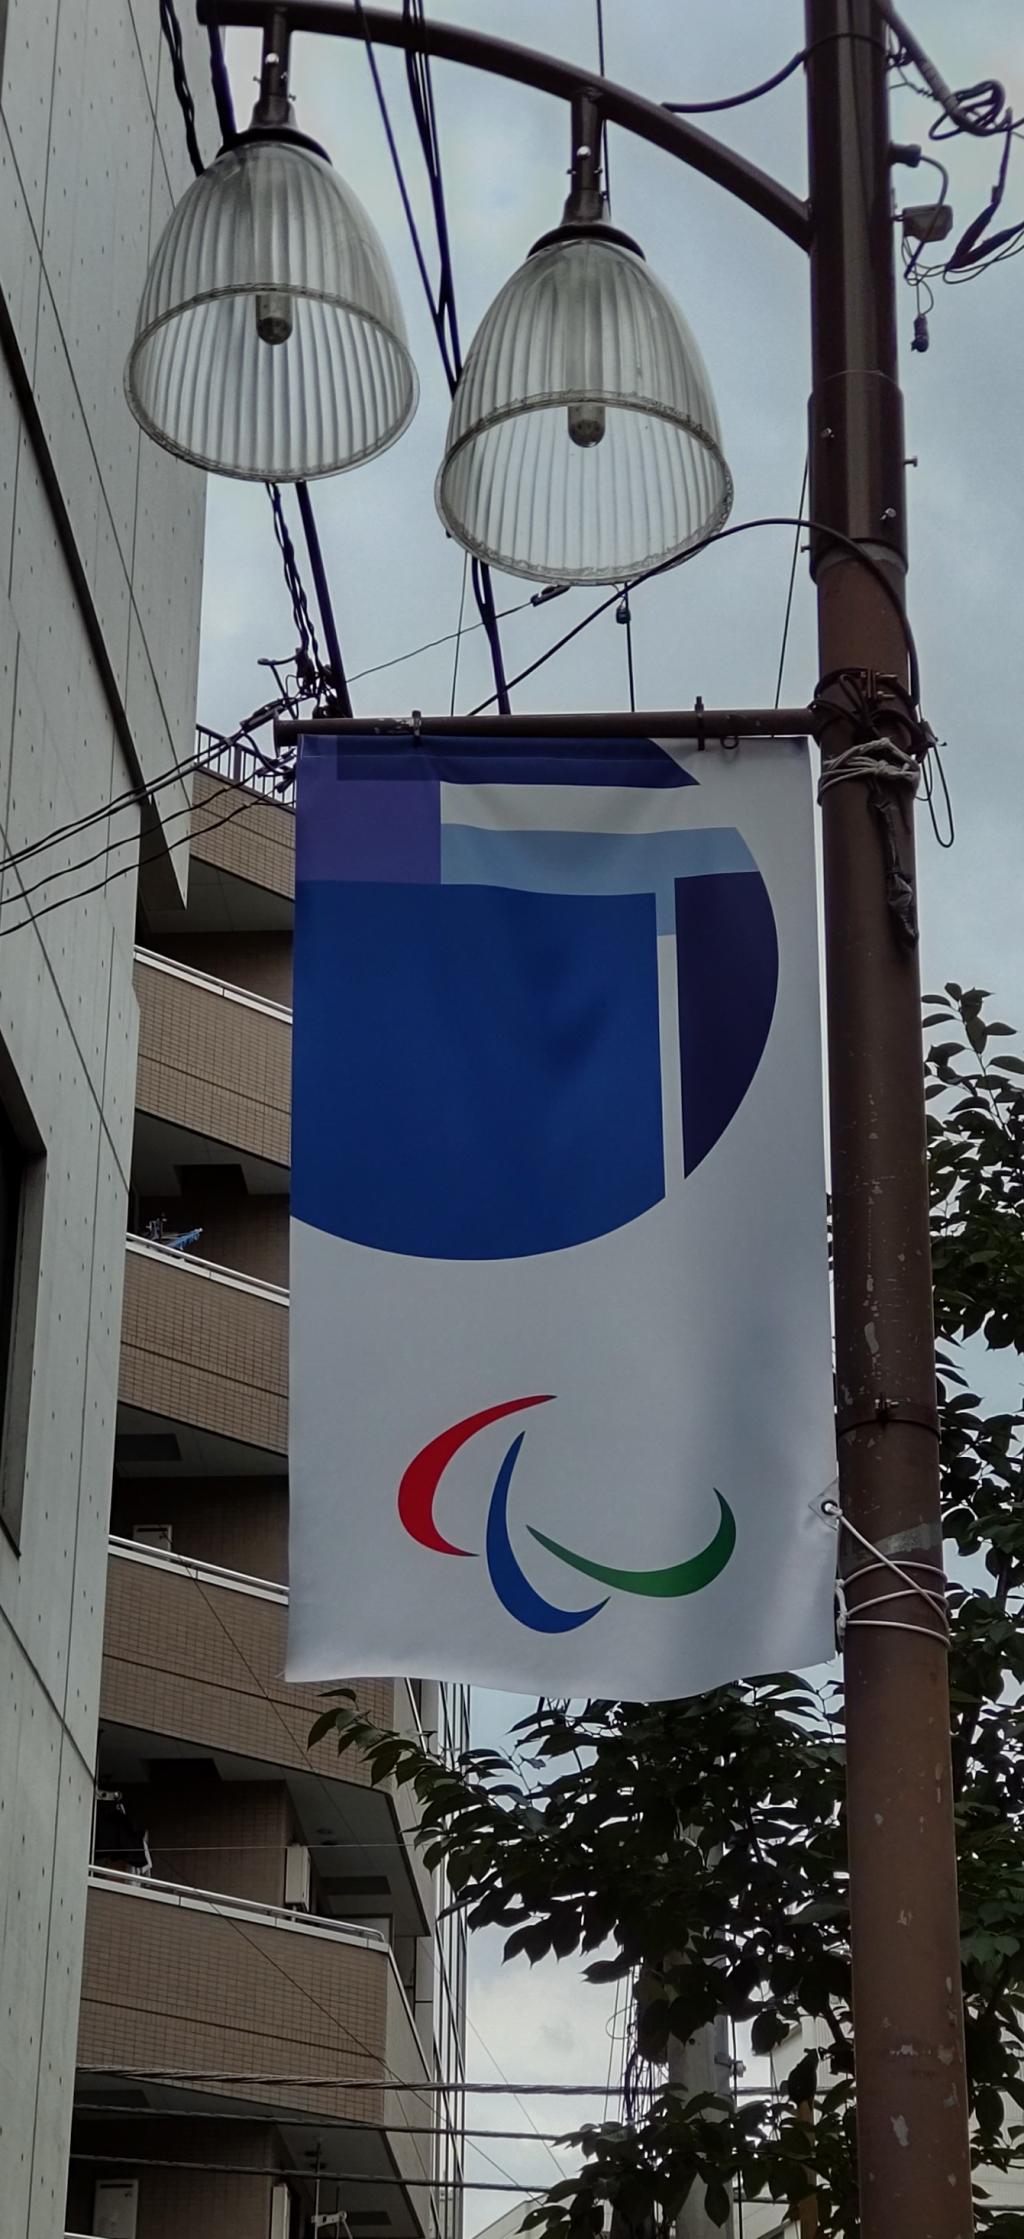 大会が開催されて、良かった。 パラリンピックスポーツの楽しさ、凄さを知らしめた
東京2020パラリンピック競技大会